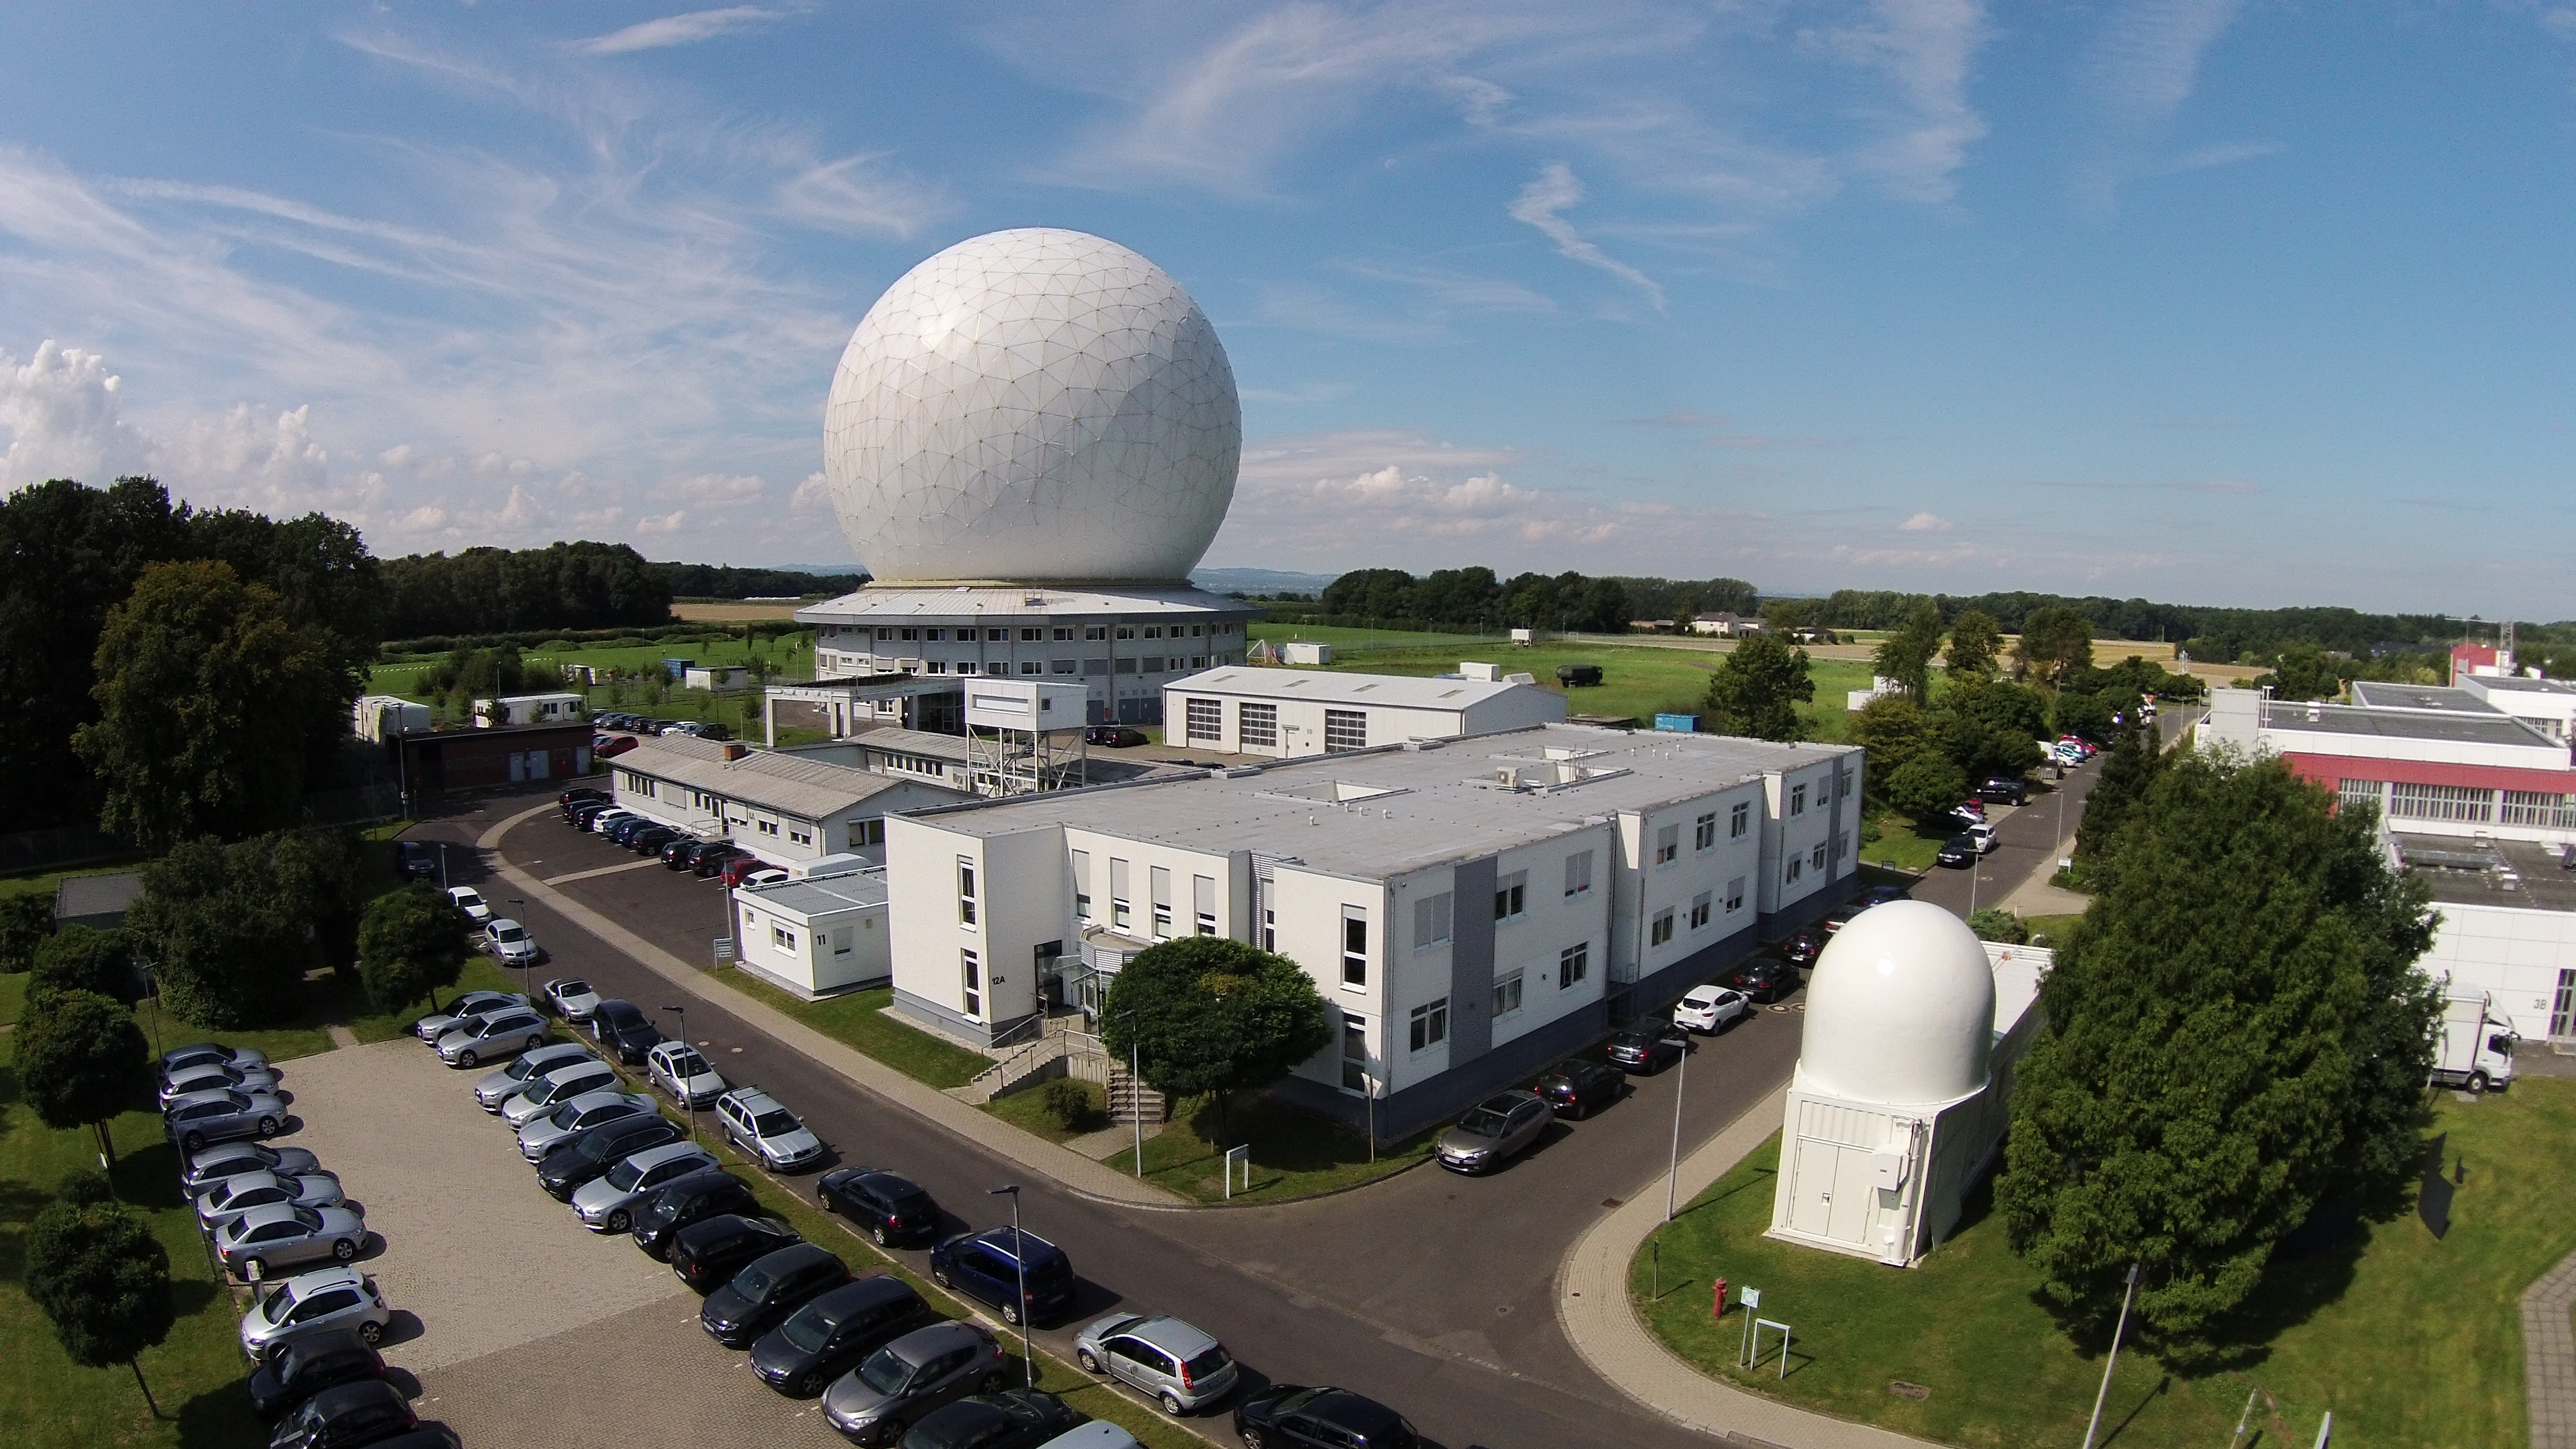 Institutsgelände des Fraunhofer FHR mit Weltraumbeobachtungsradar TIRA und dem Weltraumüberwachungsradar GESTRA in Wachtberg.